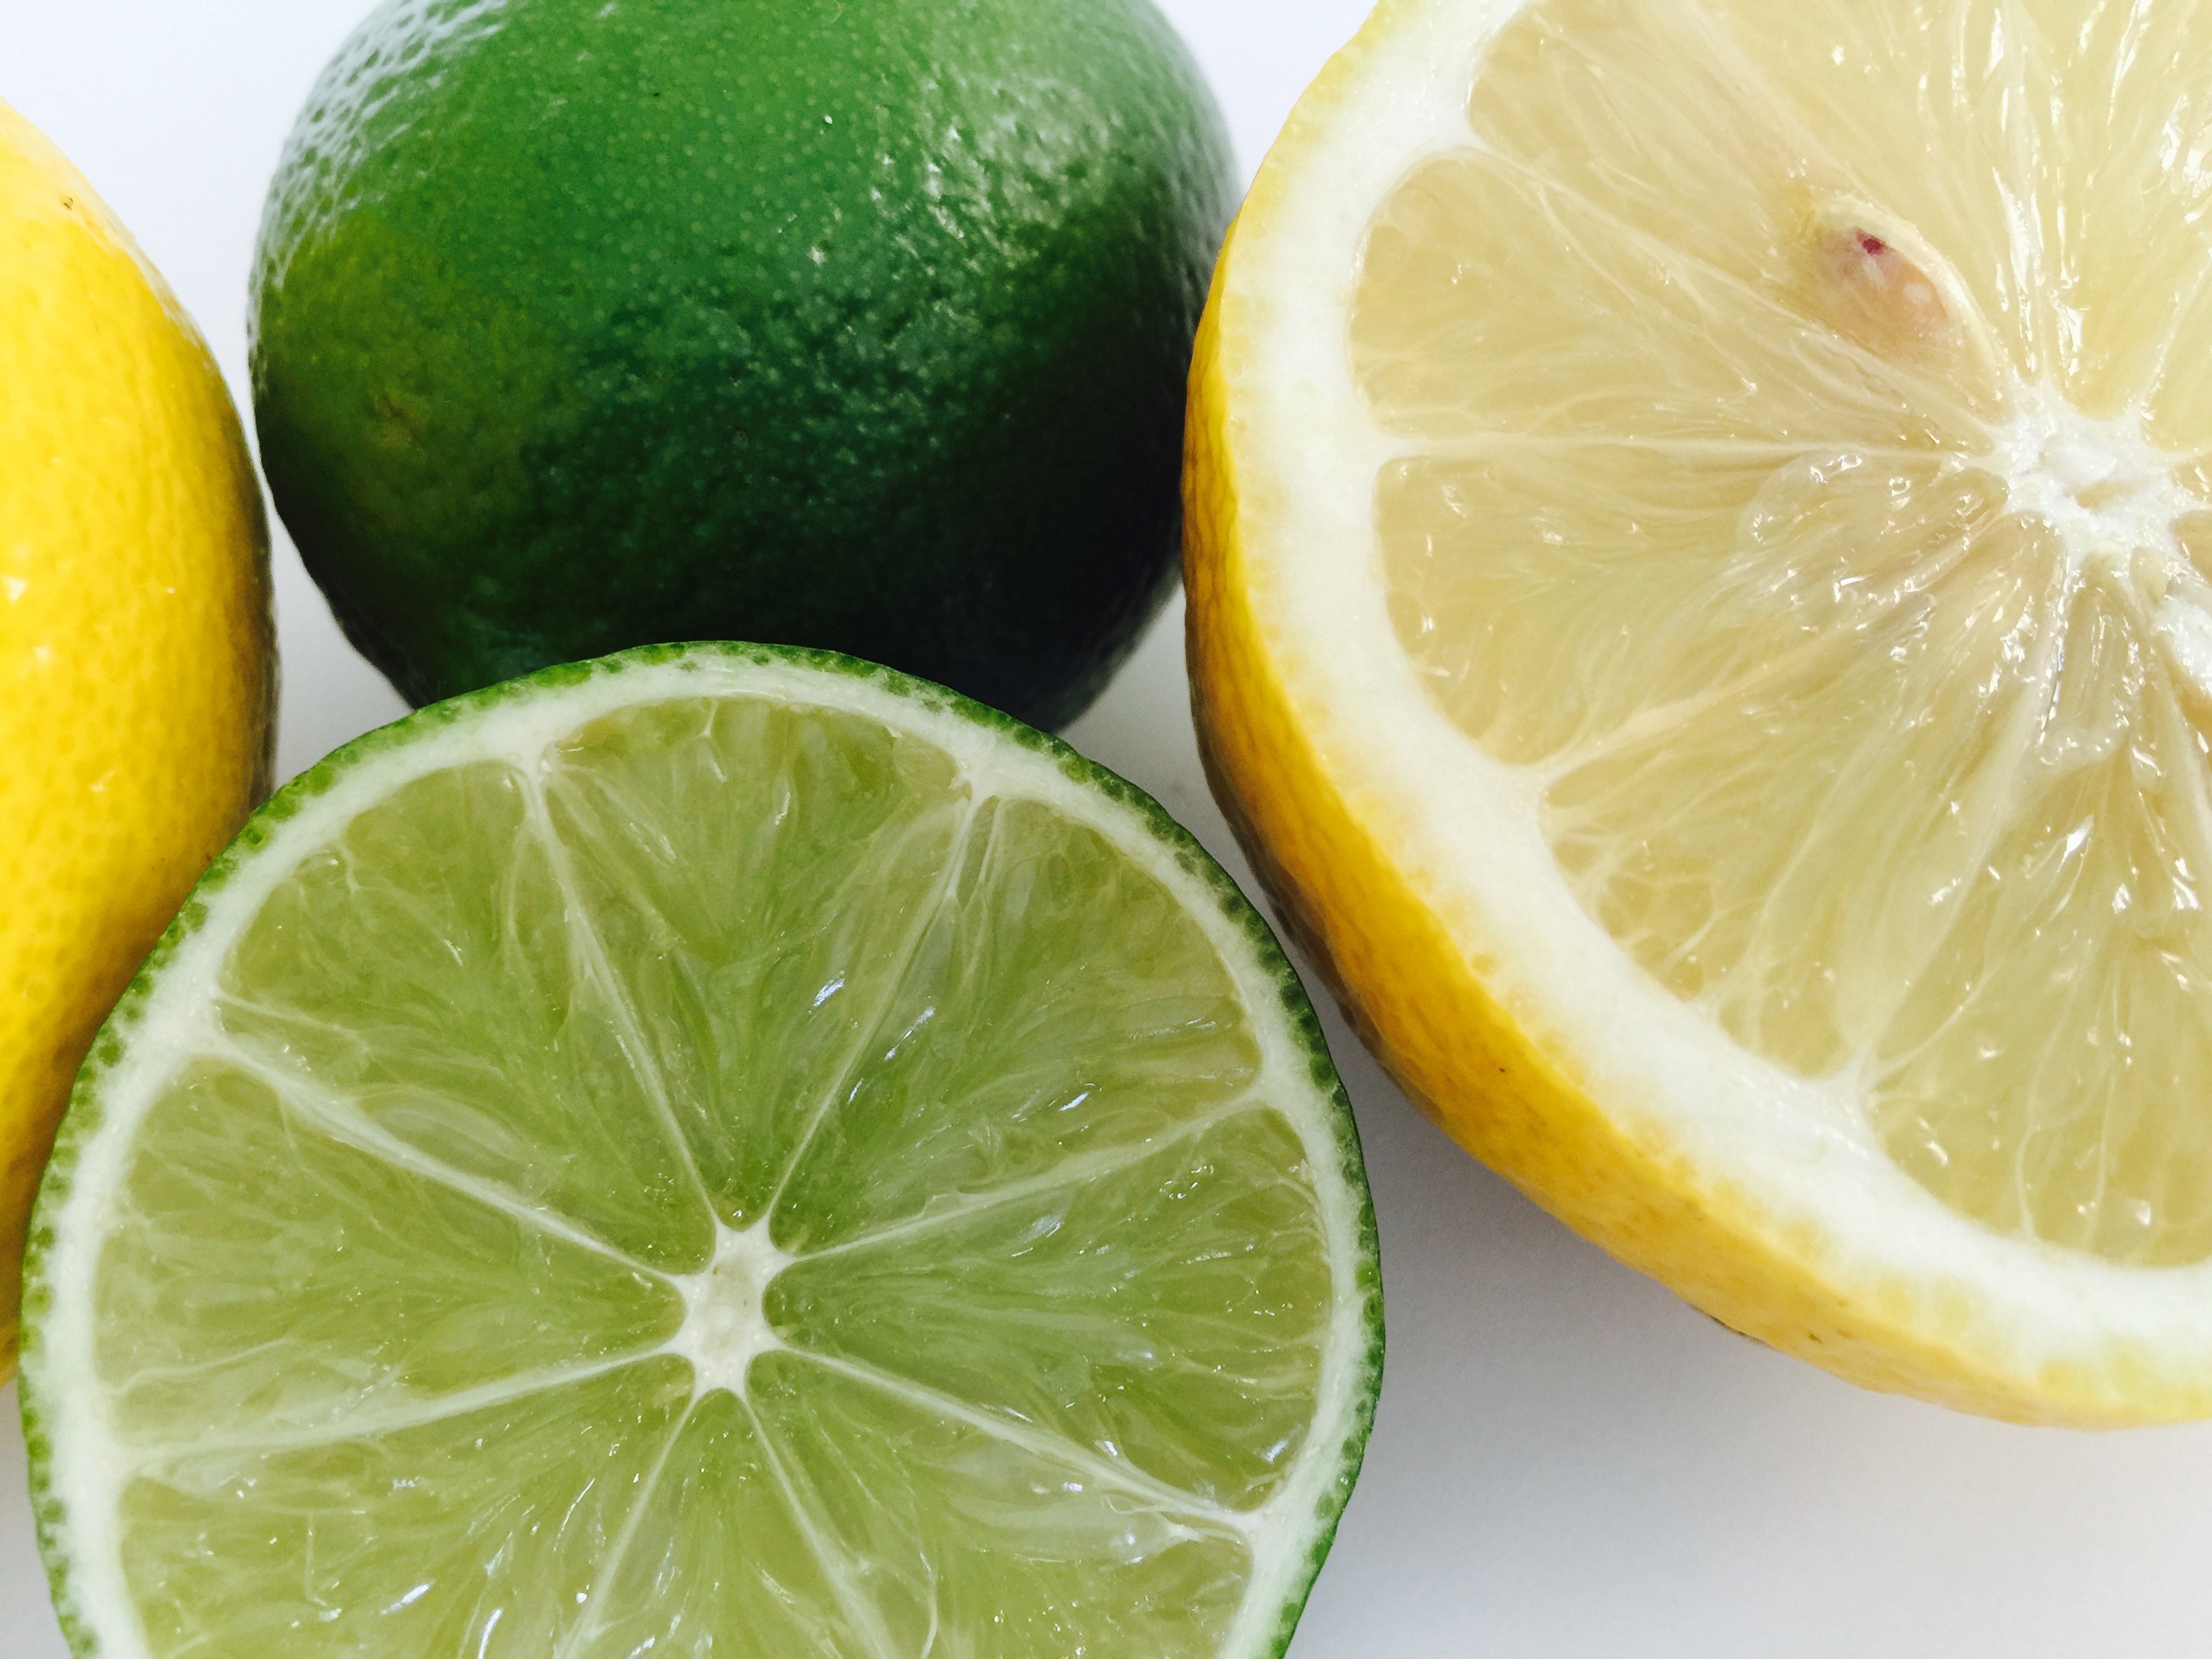 Čerstvé ovoce - Limeta a citrón